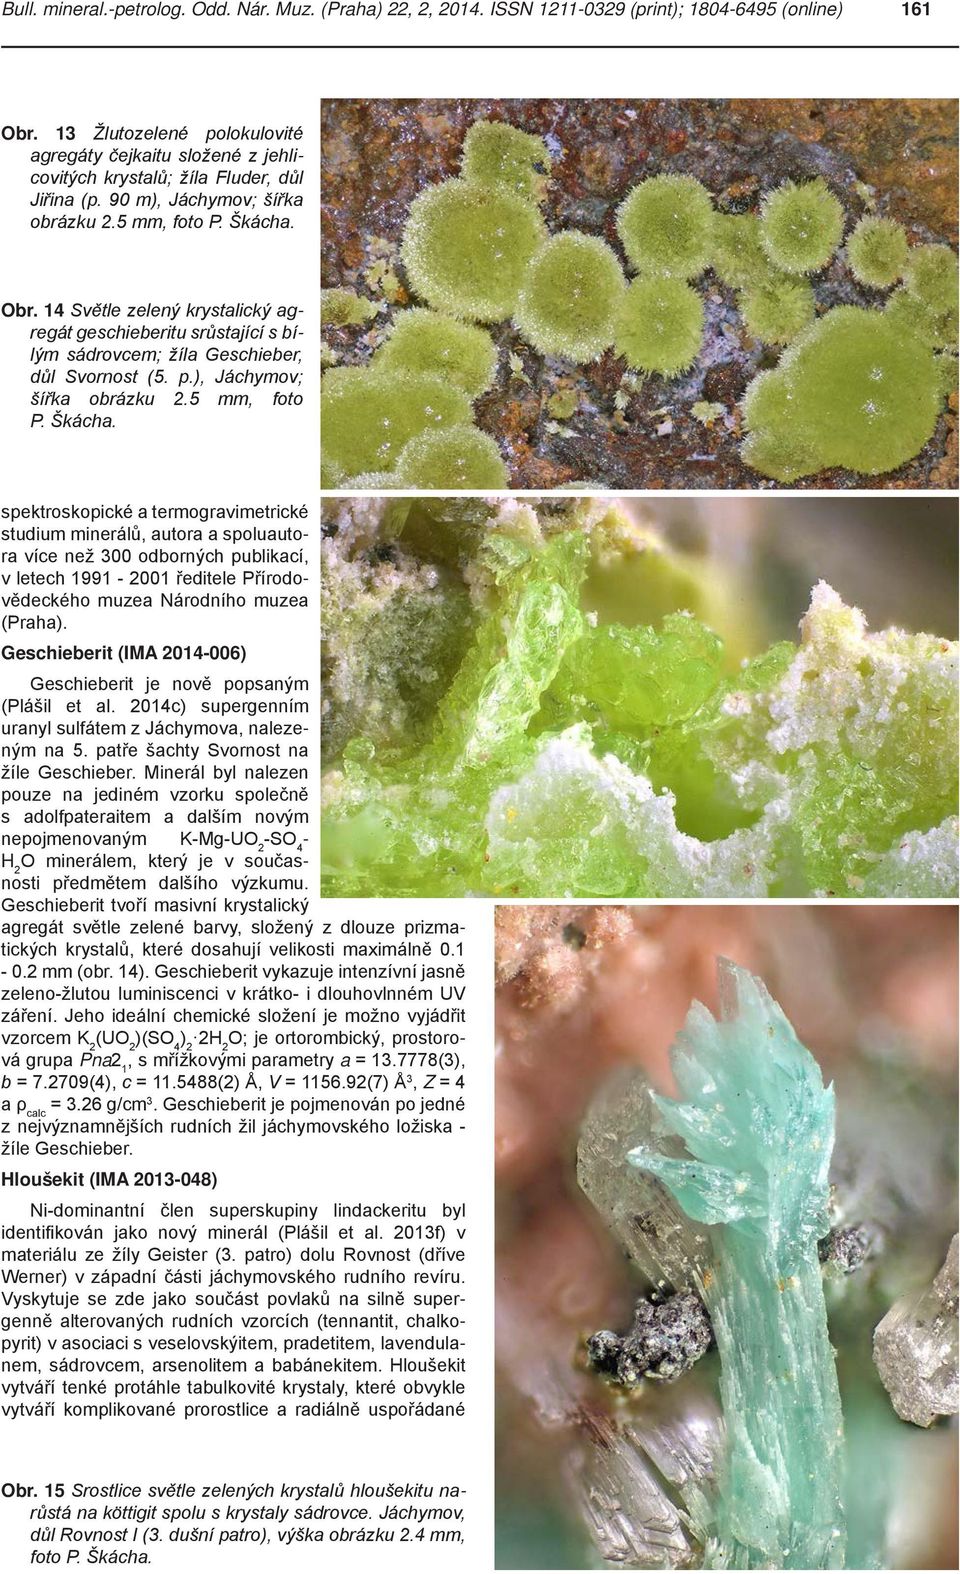 14 Světle zelený krystalický agregát geschieberitu srůstající s bílým sádrovcem; žíla Geschieber, důl Svornost (5. p.), Jáchymov; šířka obrázku 2.5 mm, foto P. Škácha.